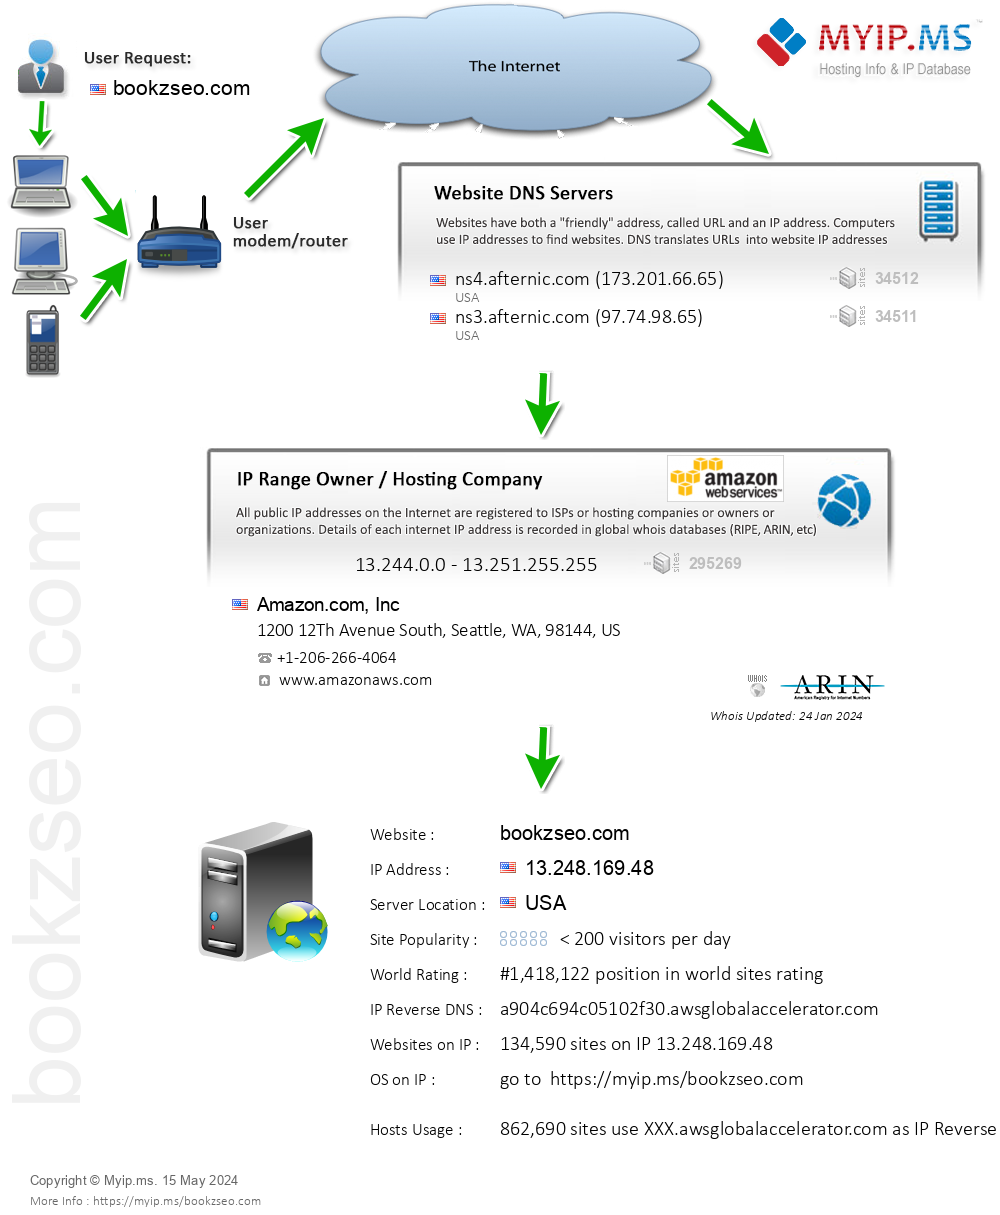 Bookzseo.com - Website Hosting Visual IP Diagram